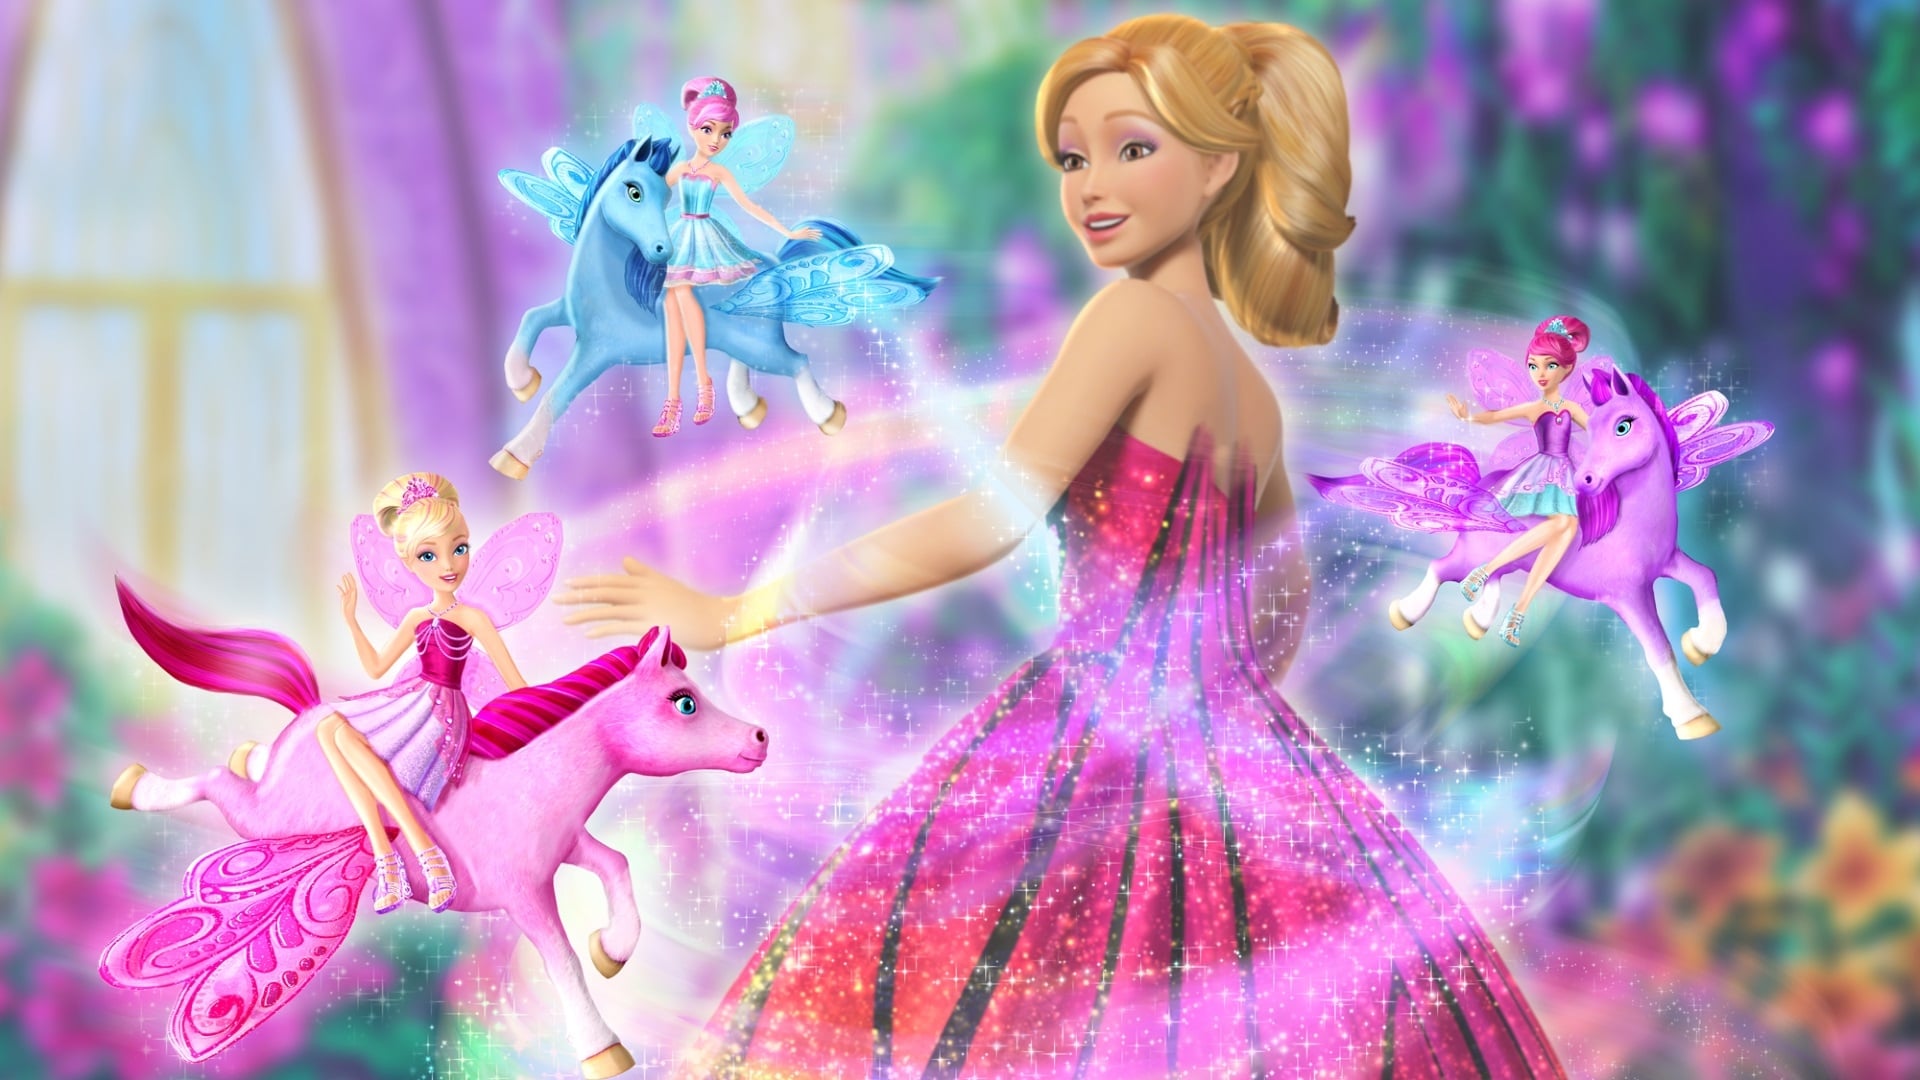 Barbie - Mariposa und die Feenprinzessin